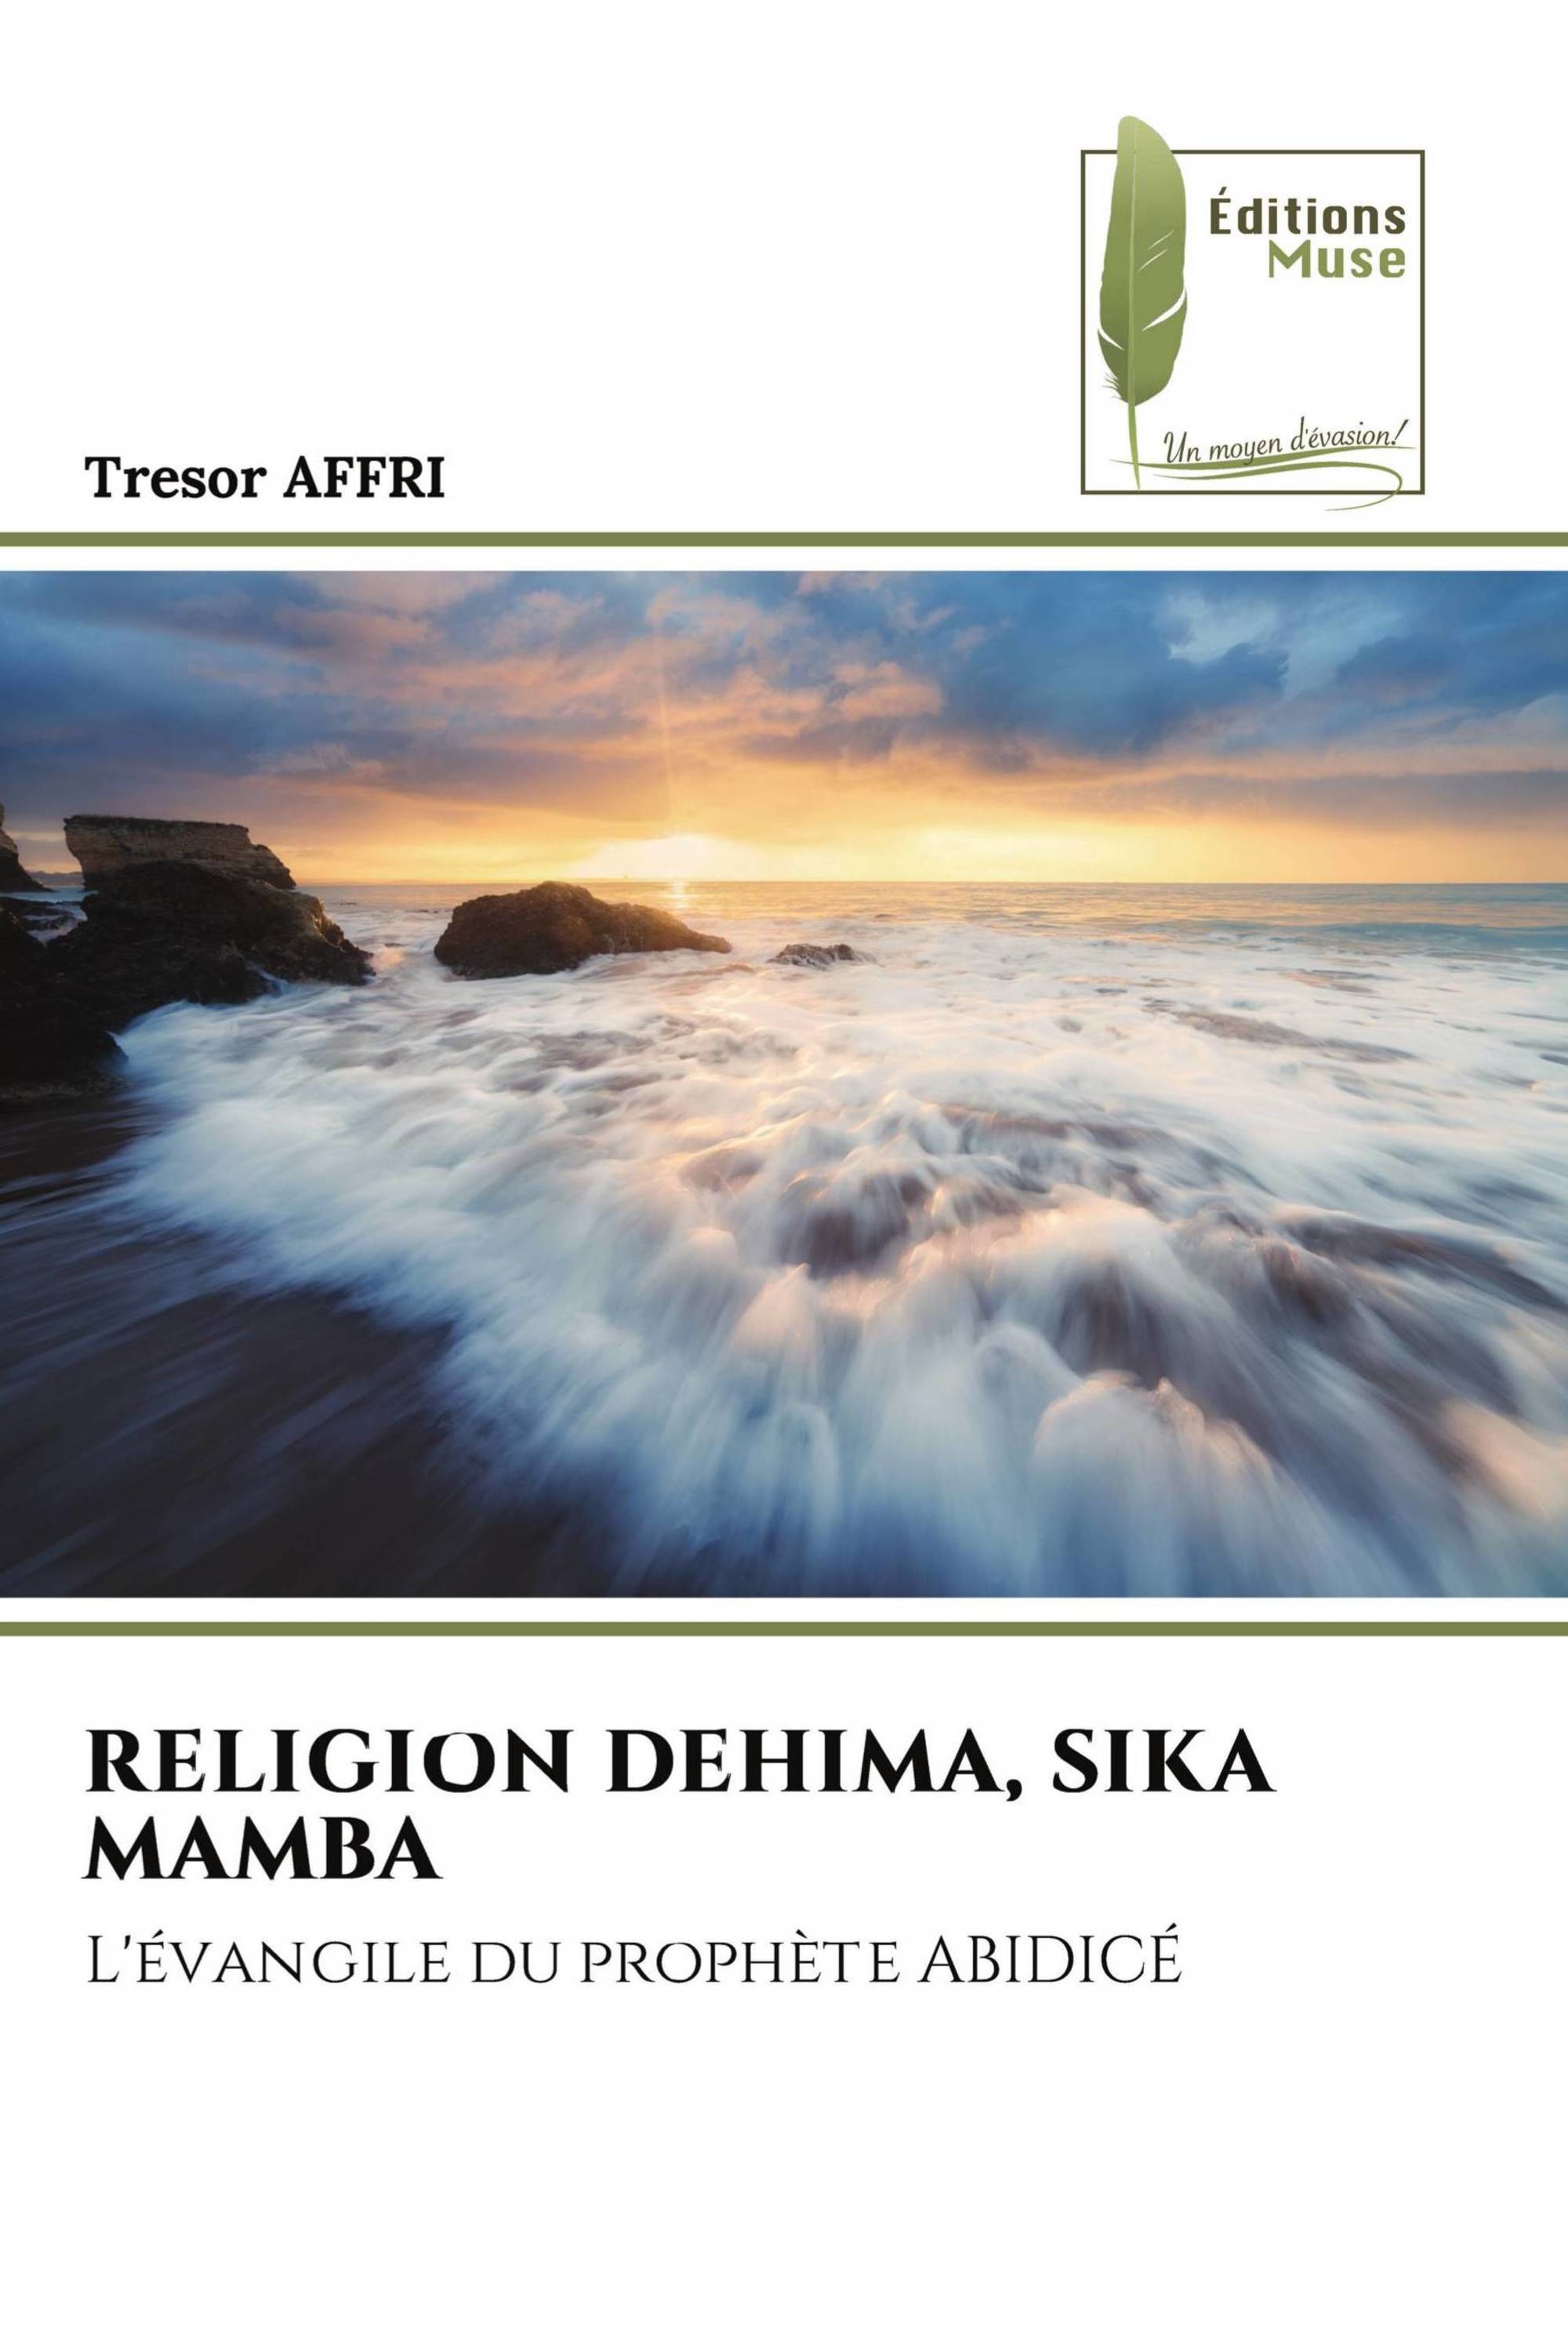 RELIGION DEHIMA, SIKA MAMBA